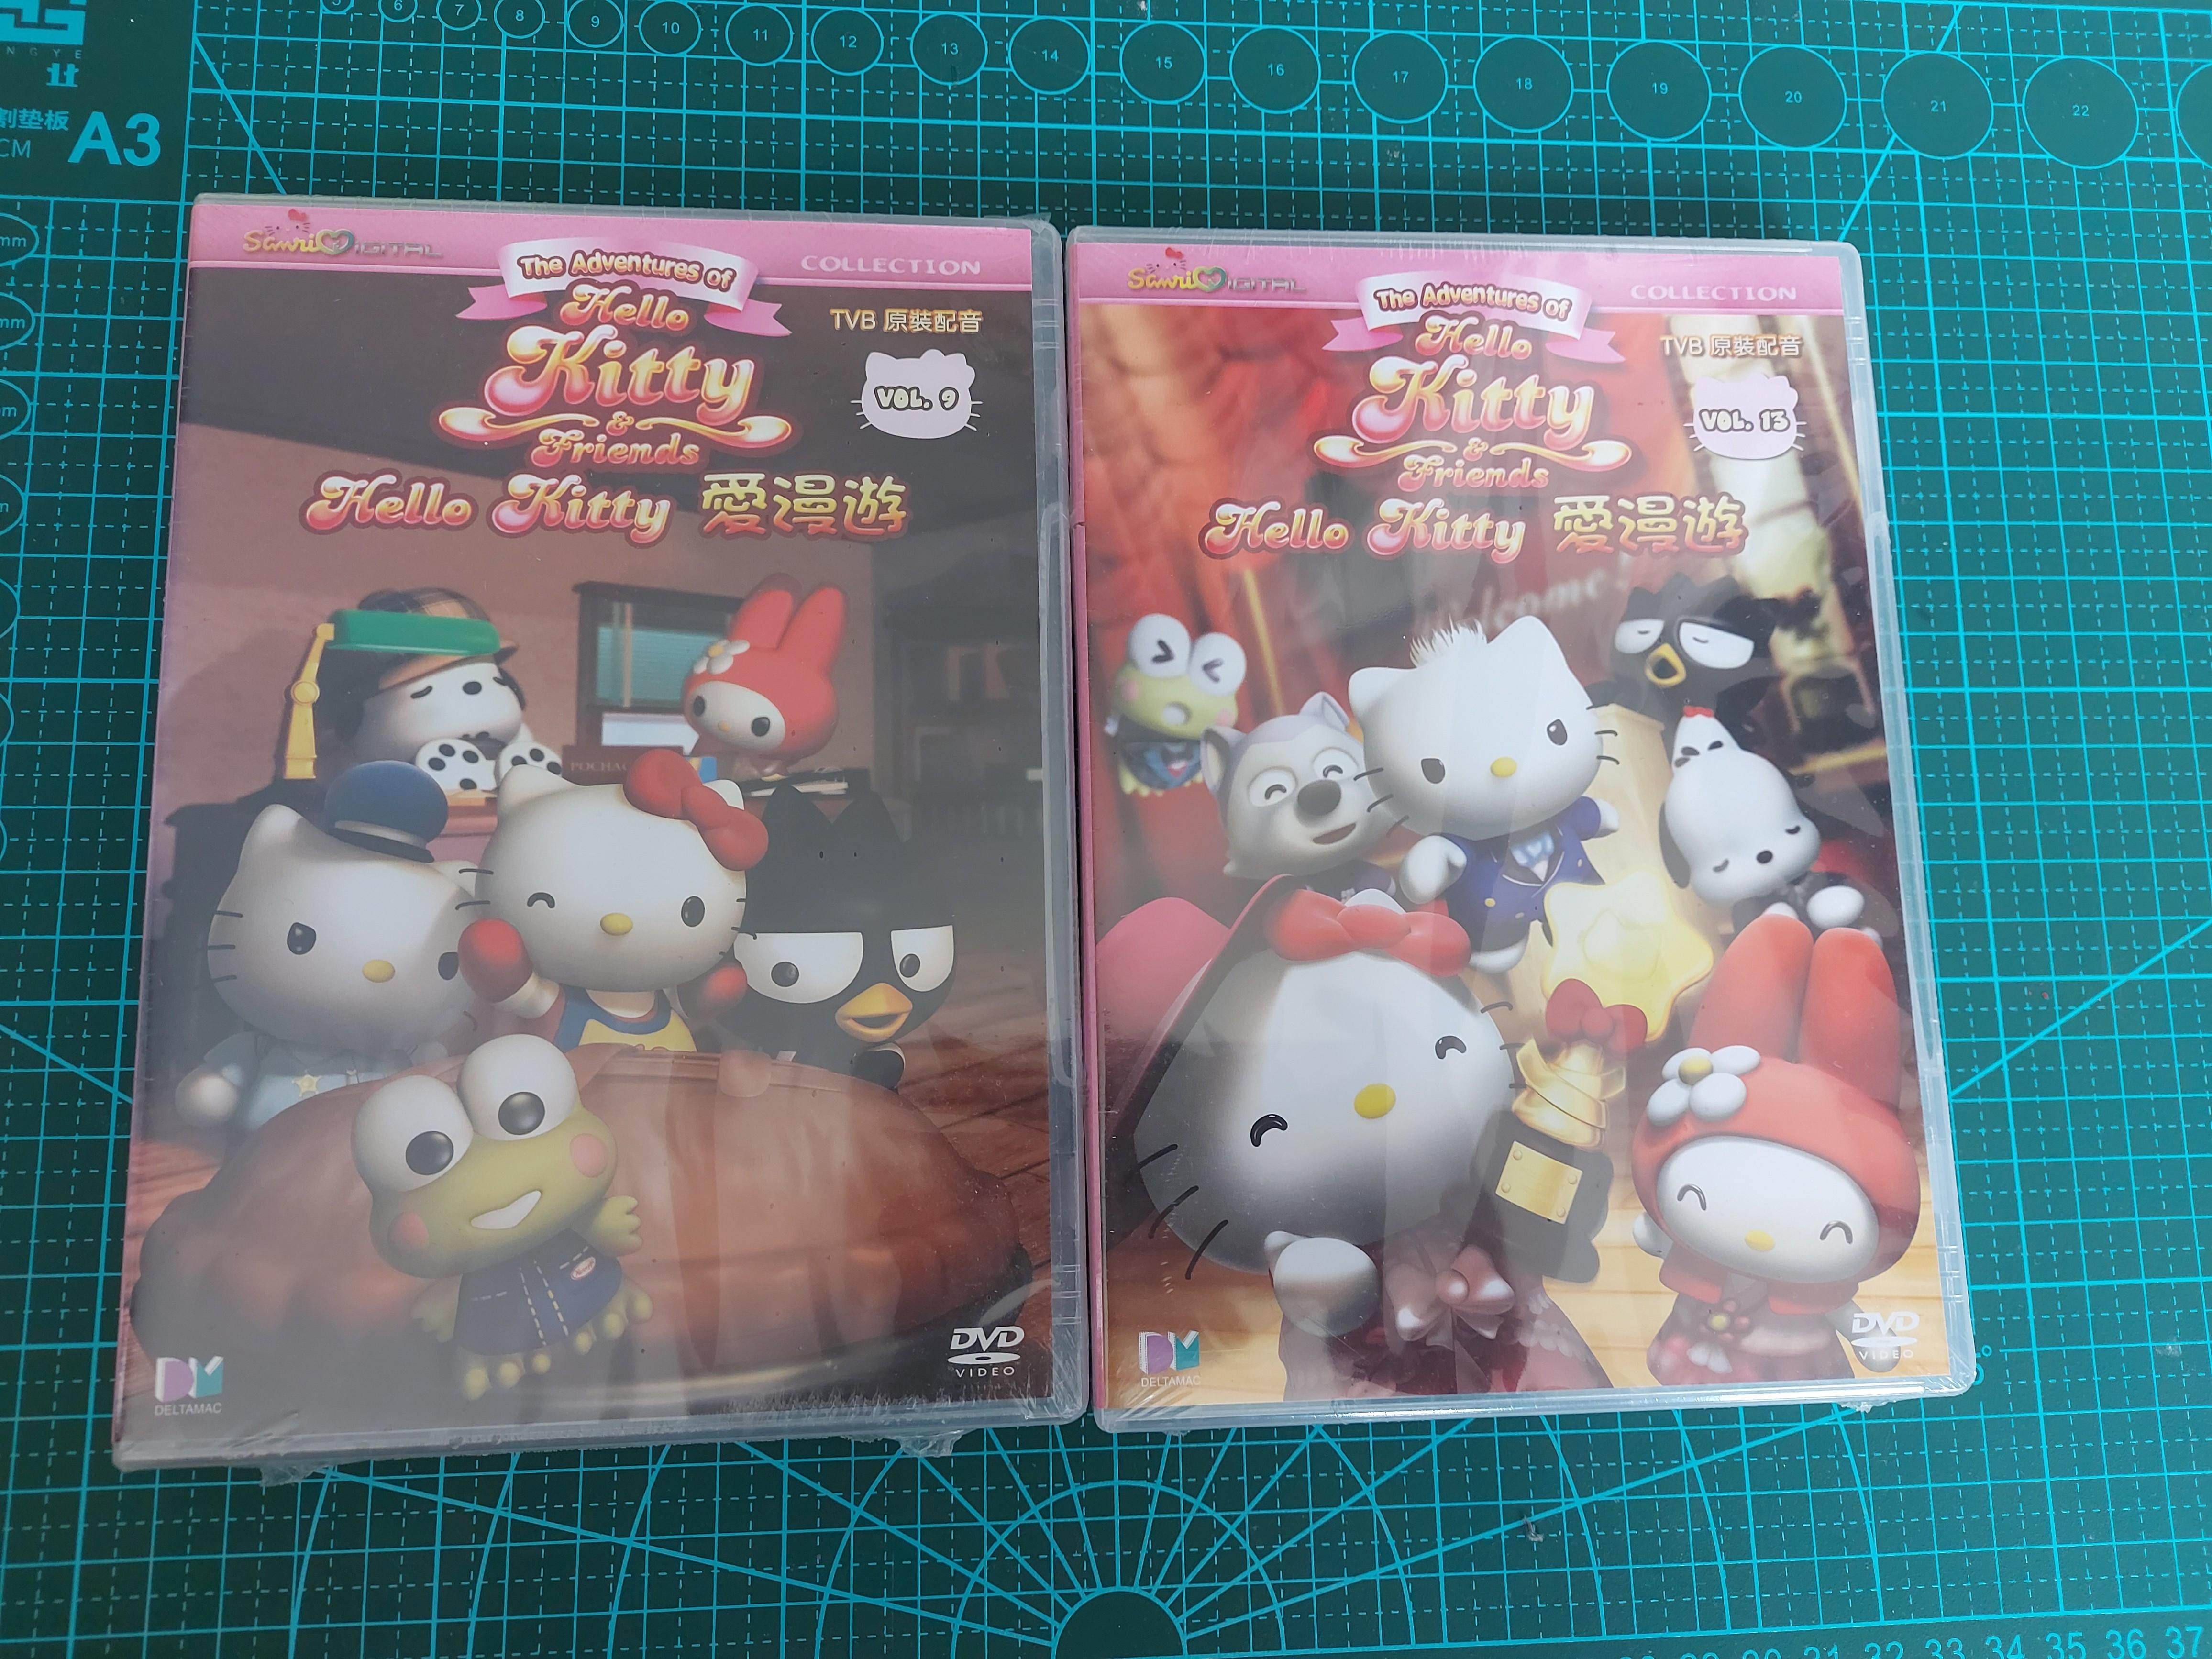 hello kitty 愛漫遊DVD vol. 9 & vol. 13, 興趣及遊戲, 收藏品及紀念品